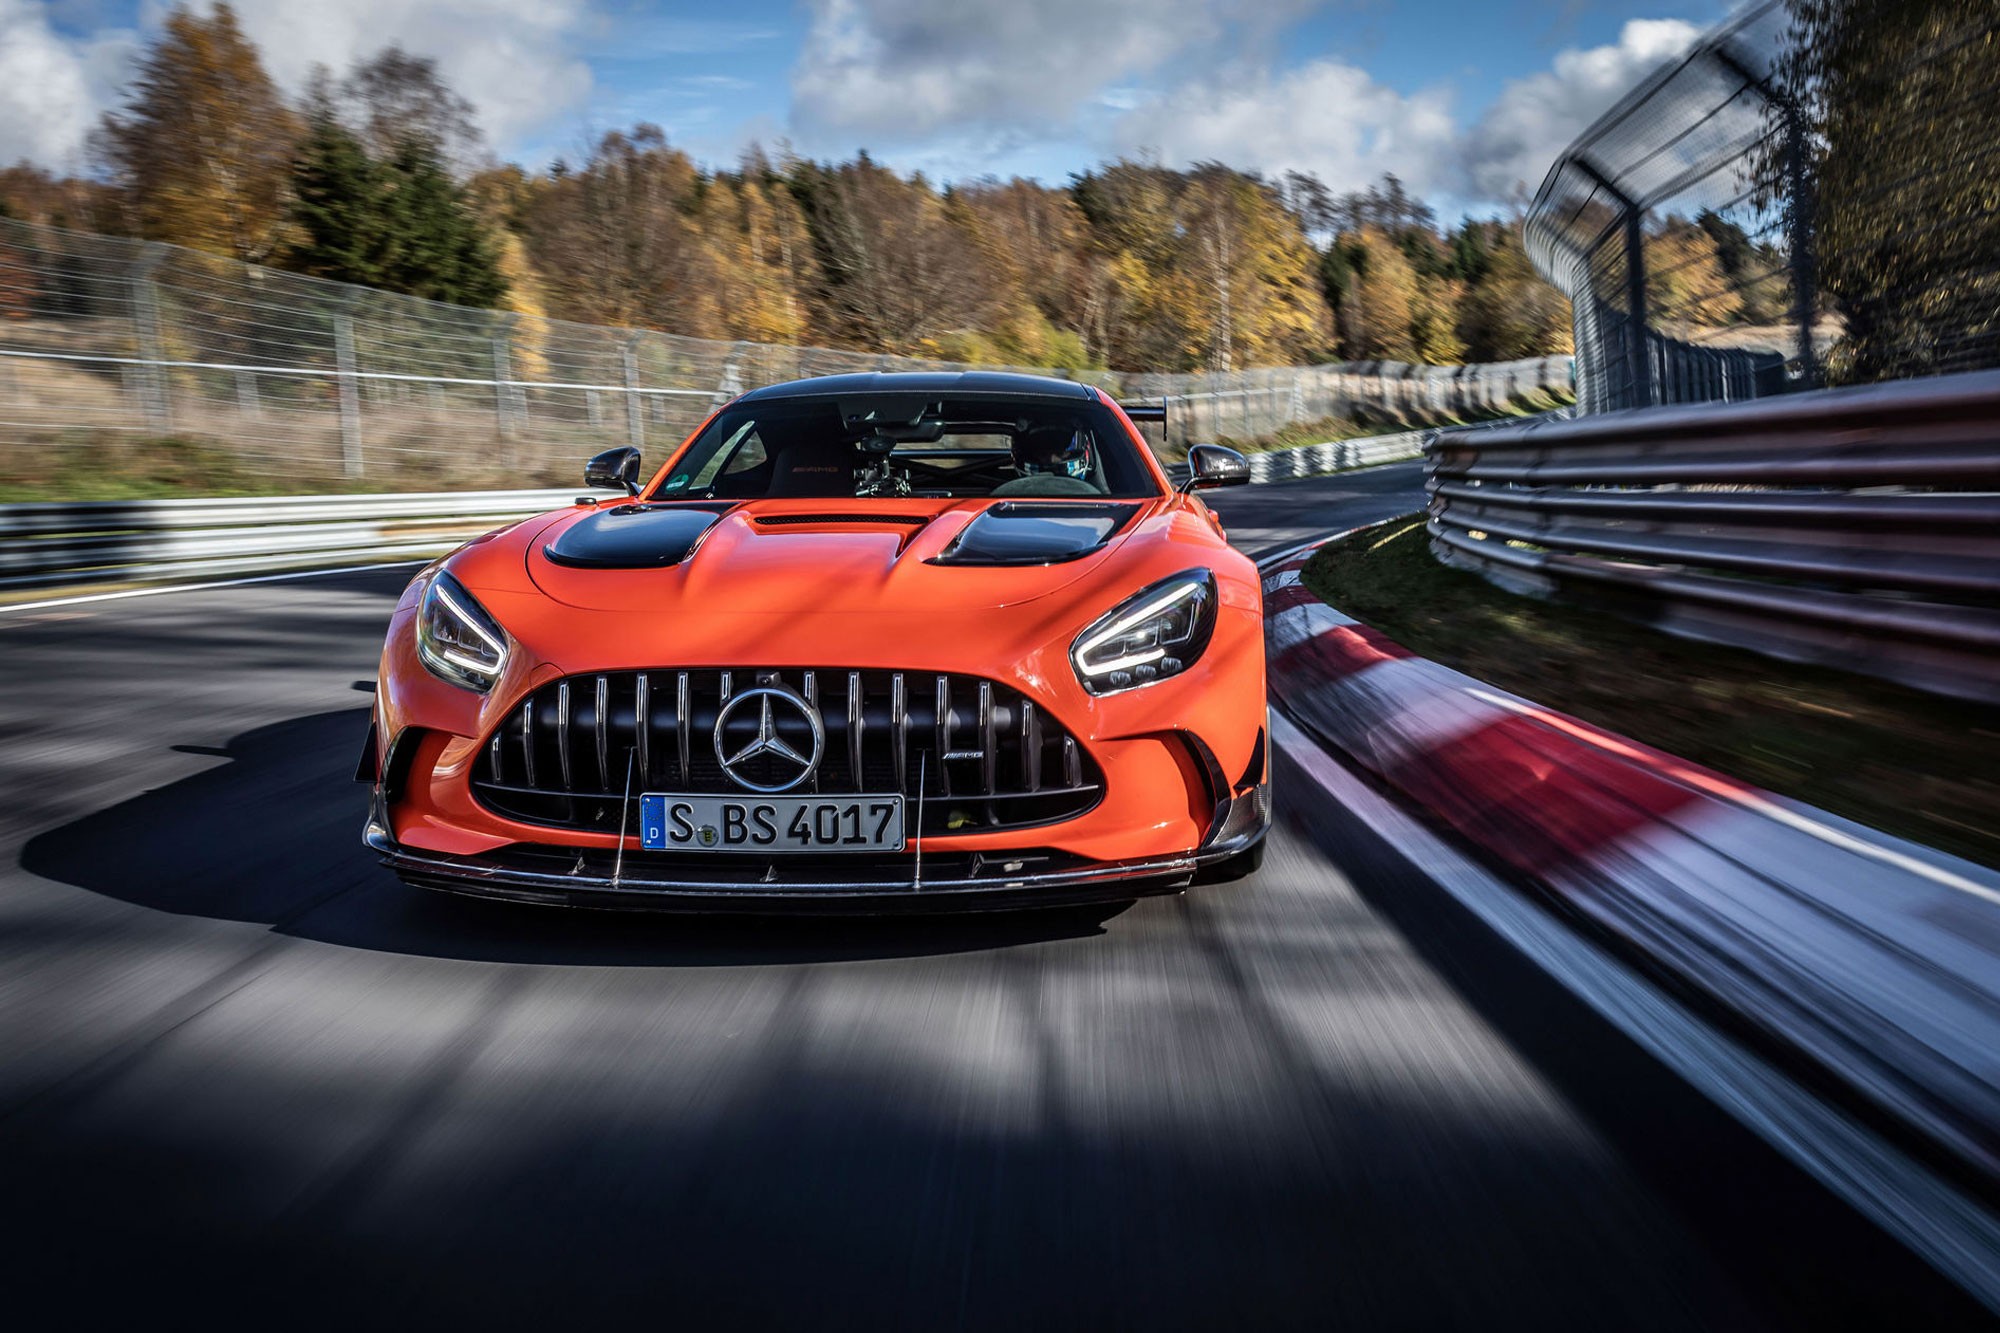 Το γρηγορότερο αυτοκίνητο παραγωγής στο Nurburgring